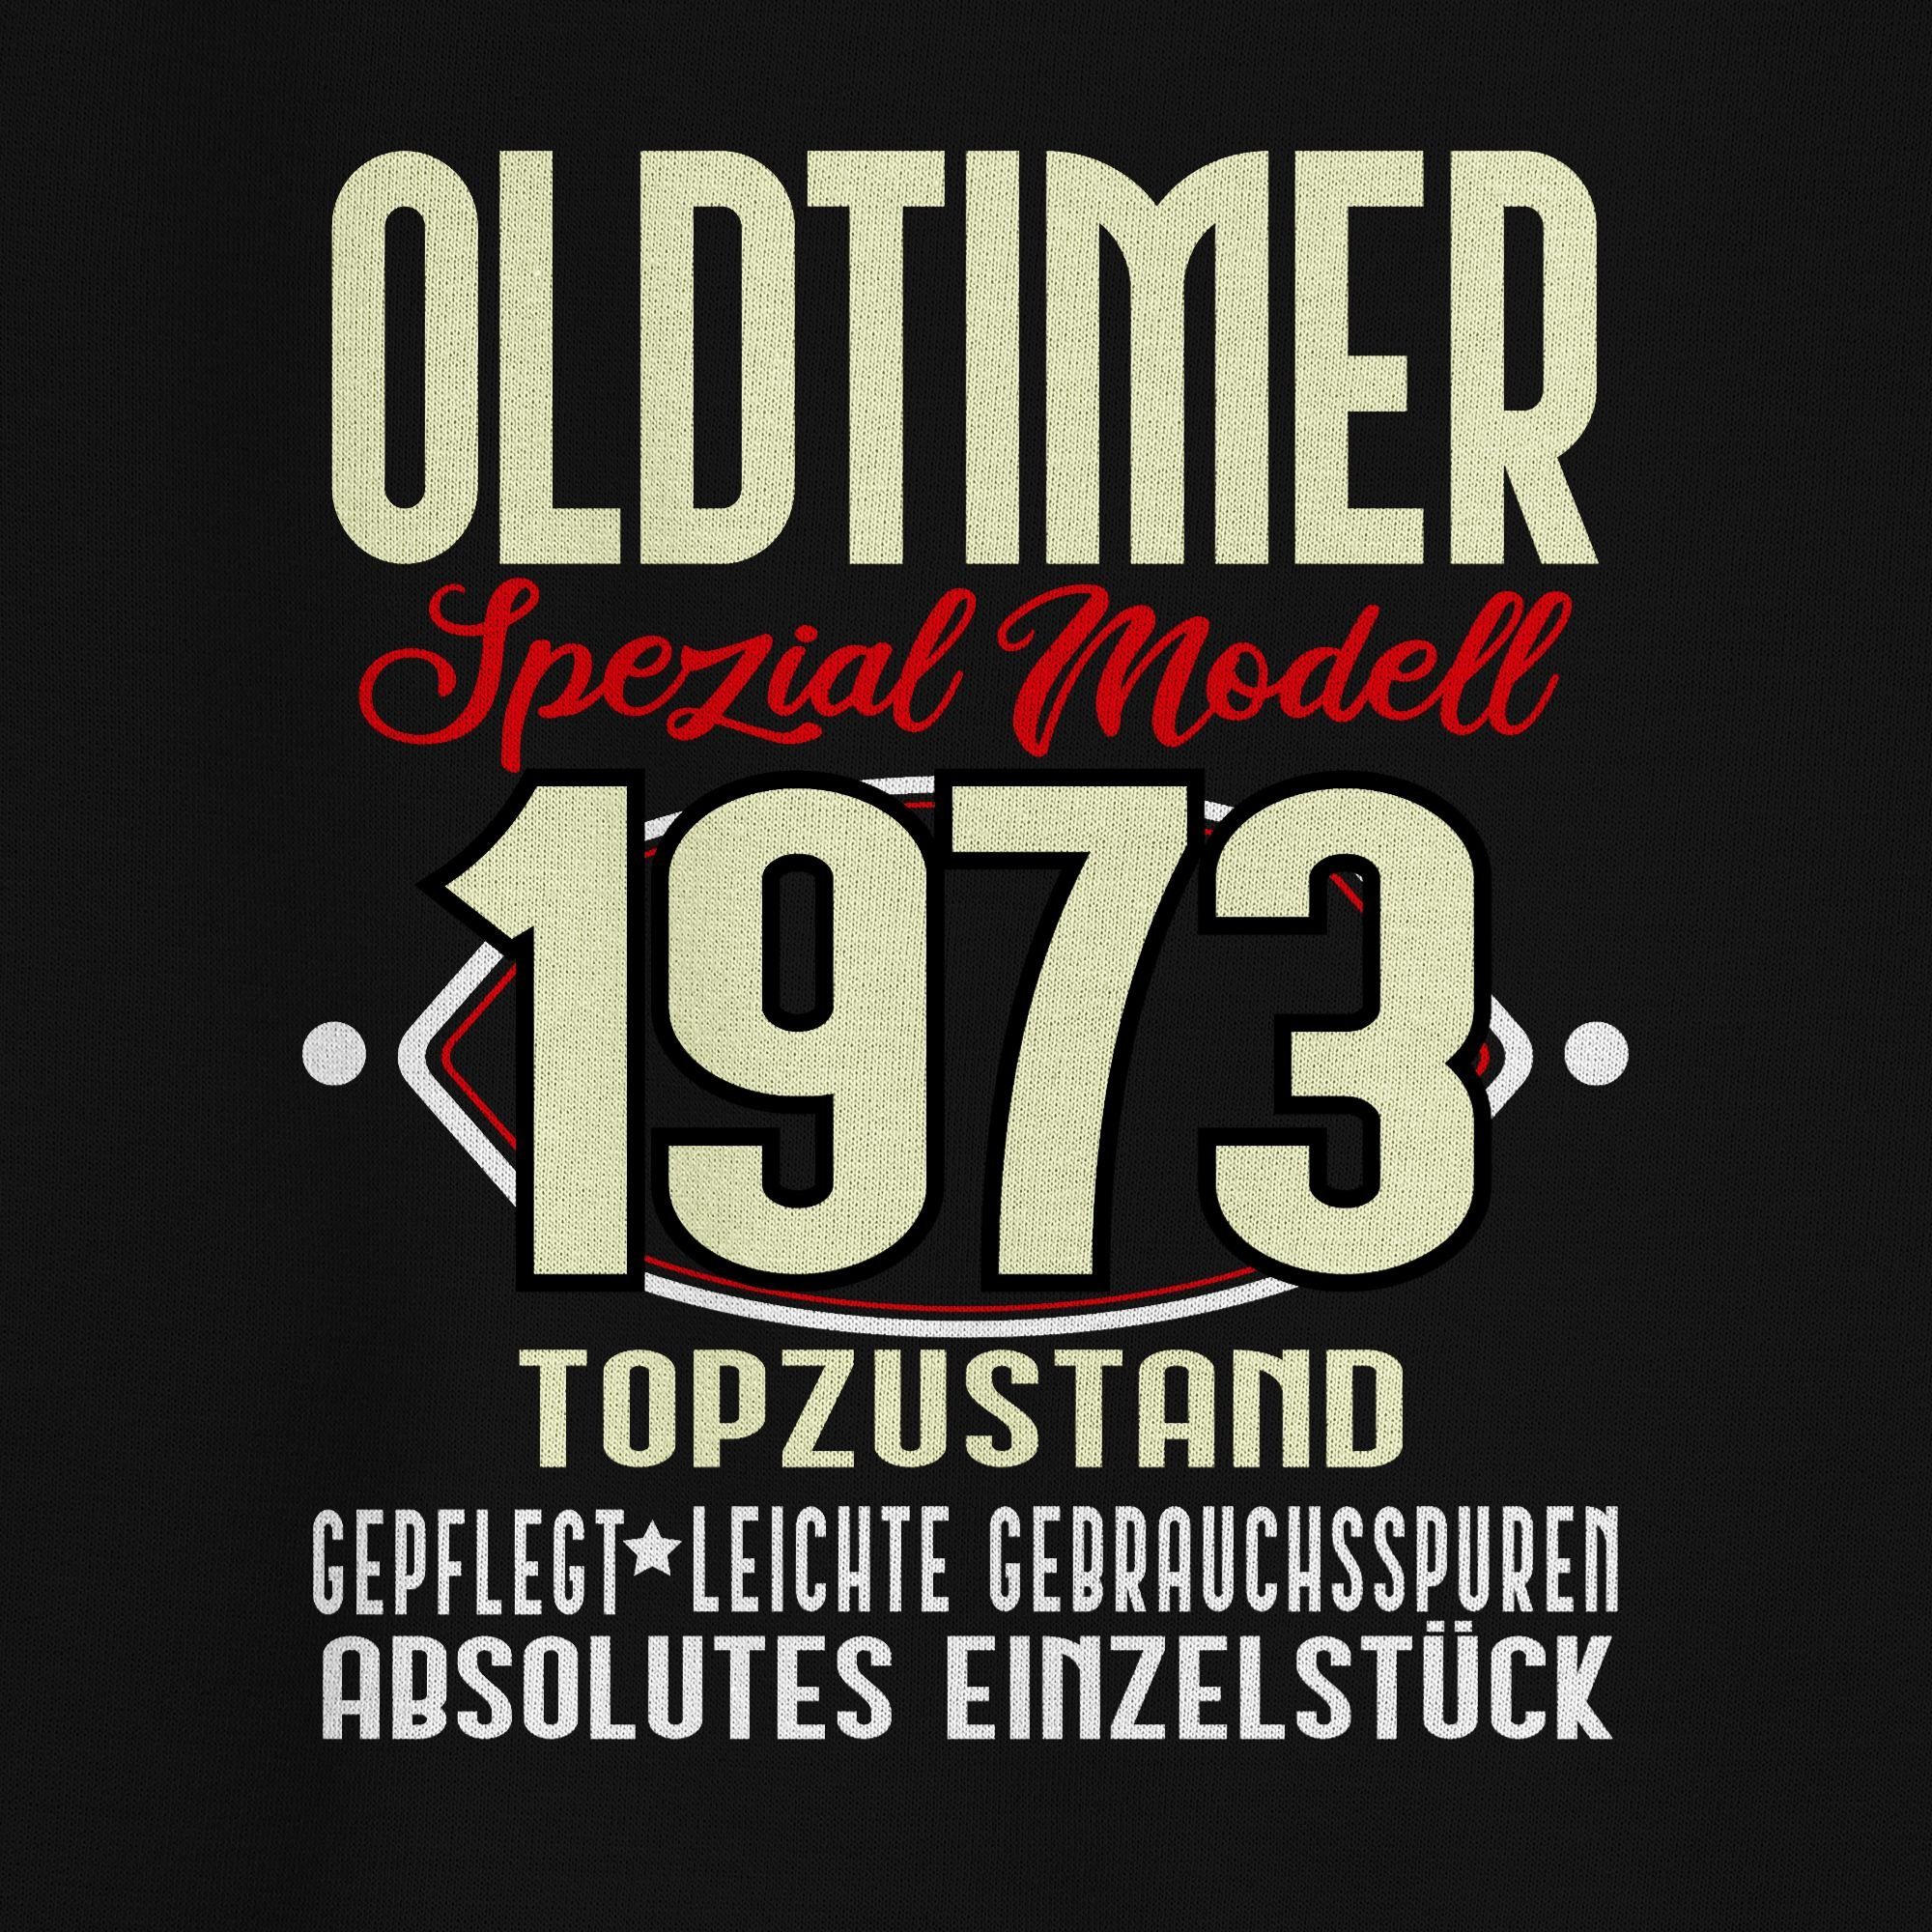 Shirtracer Sweatshirt Oldtimer Spezial Modell (1-tlg) Schwarz 50. Fünfzigster 1973 Geburtstag 1